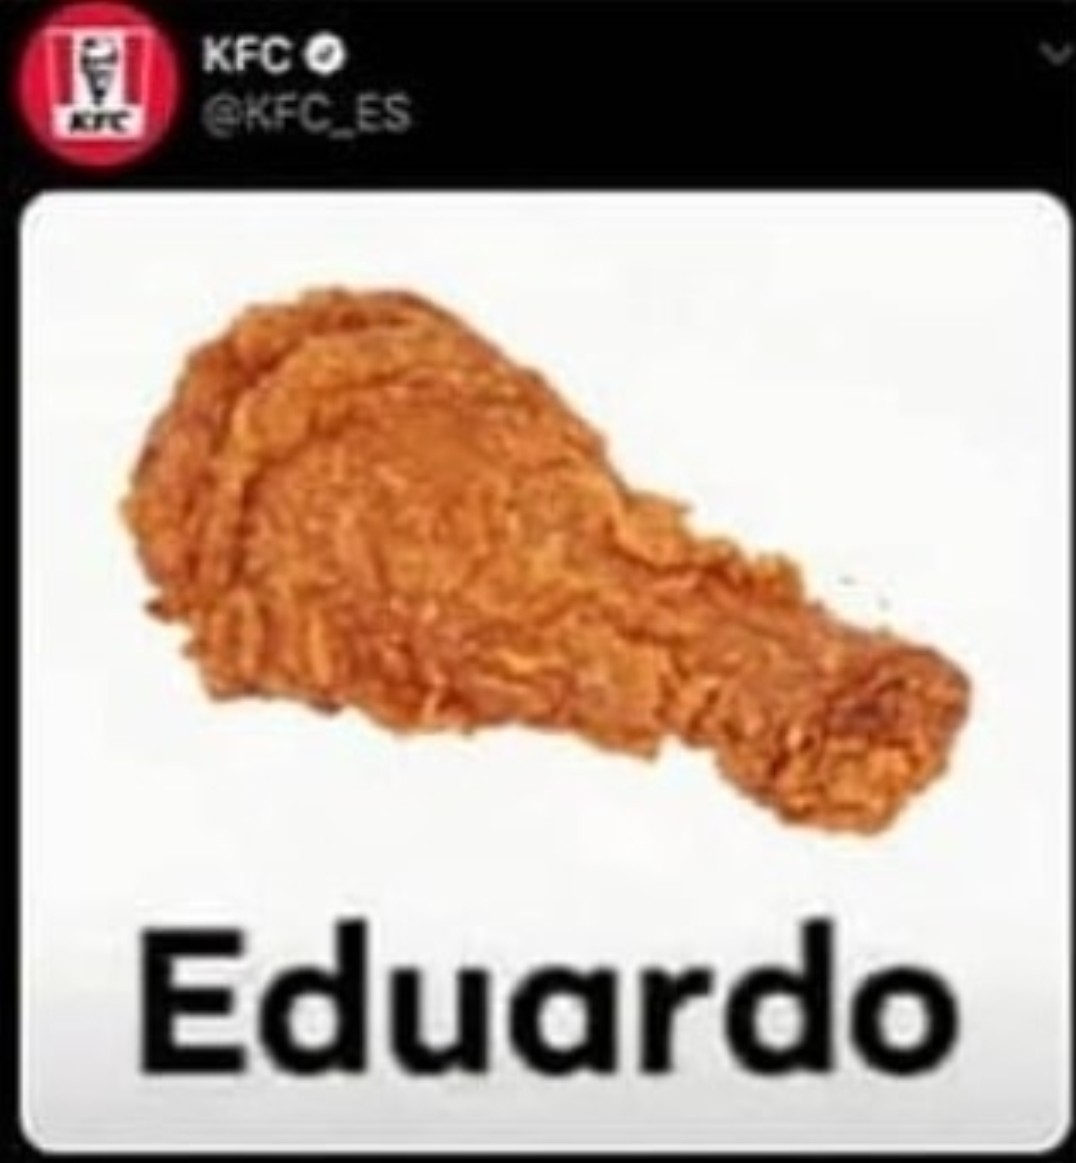 Eduardo - meme